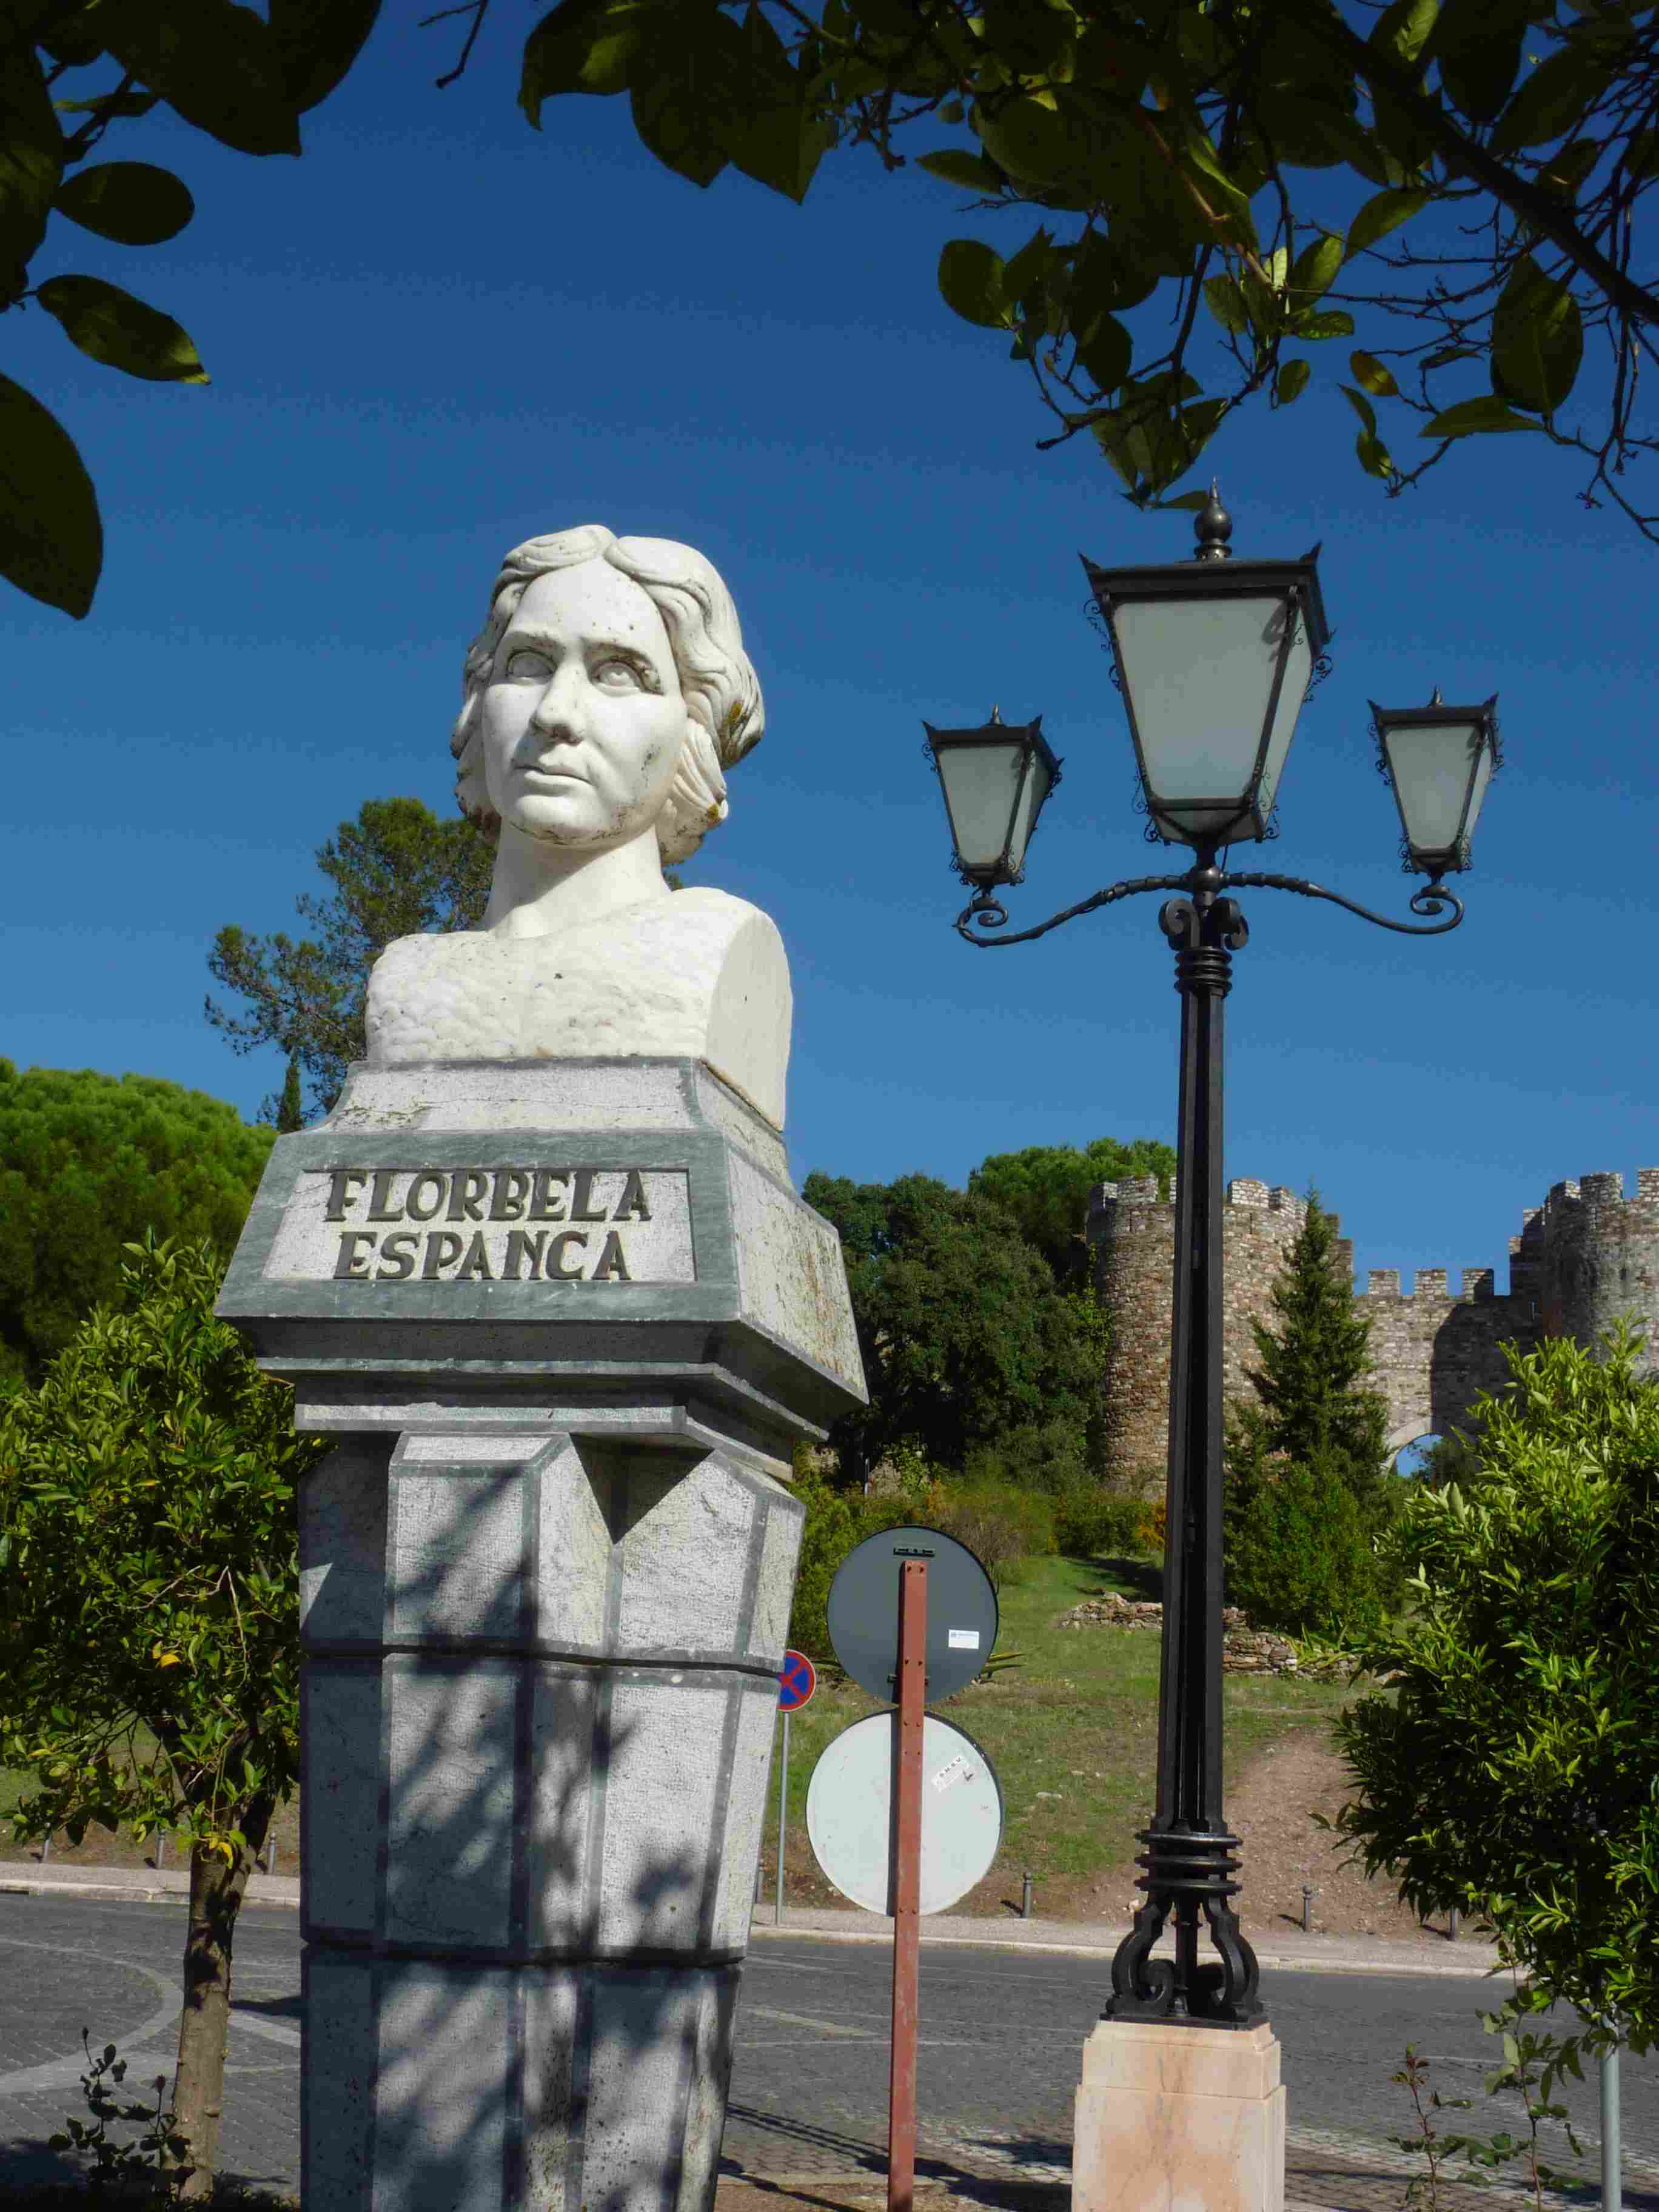 Statue of Florbela Espanca